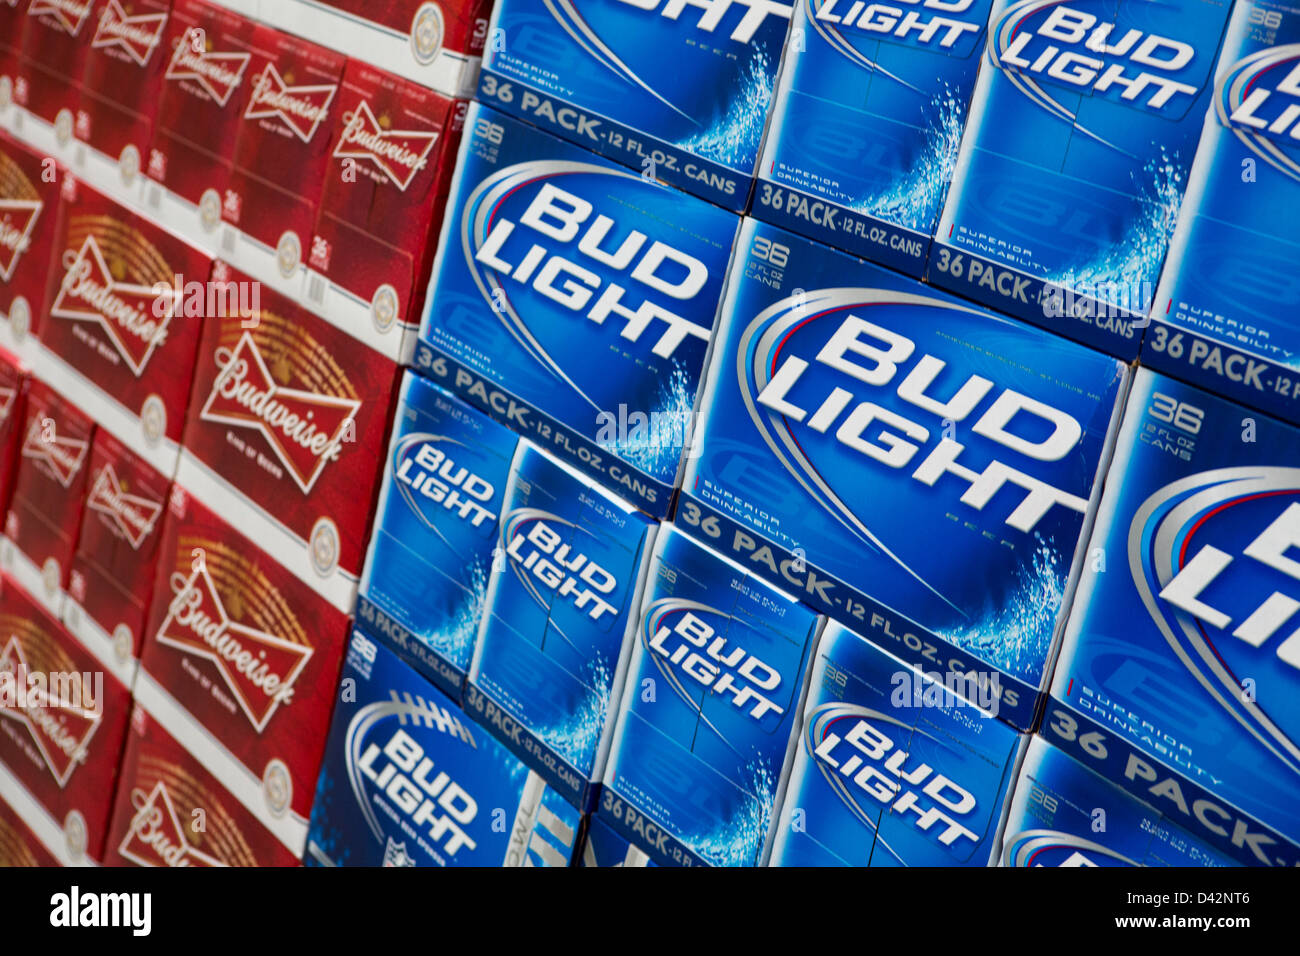 Budweiser e Bud Light birra sul visualizzatore in corrispondenza di un Costco Wholesale Club magazzino. Foto Stock